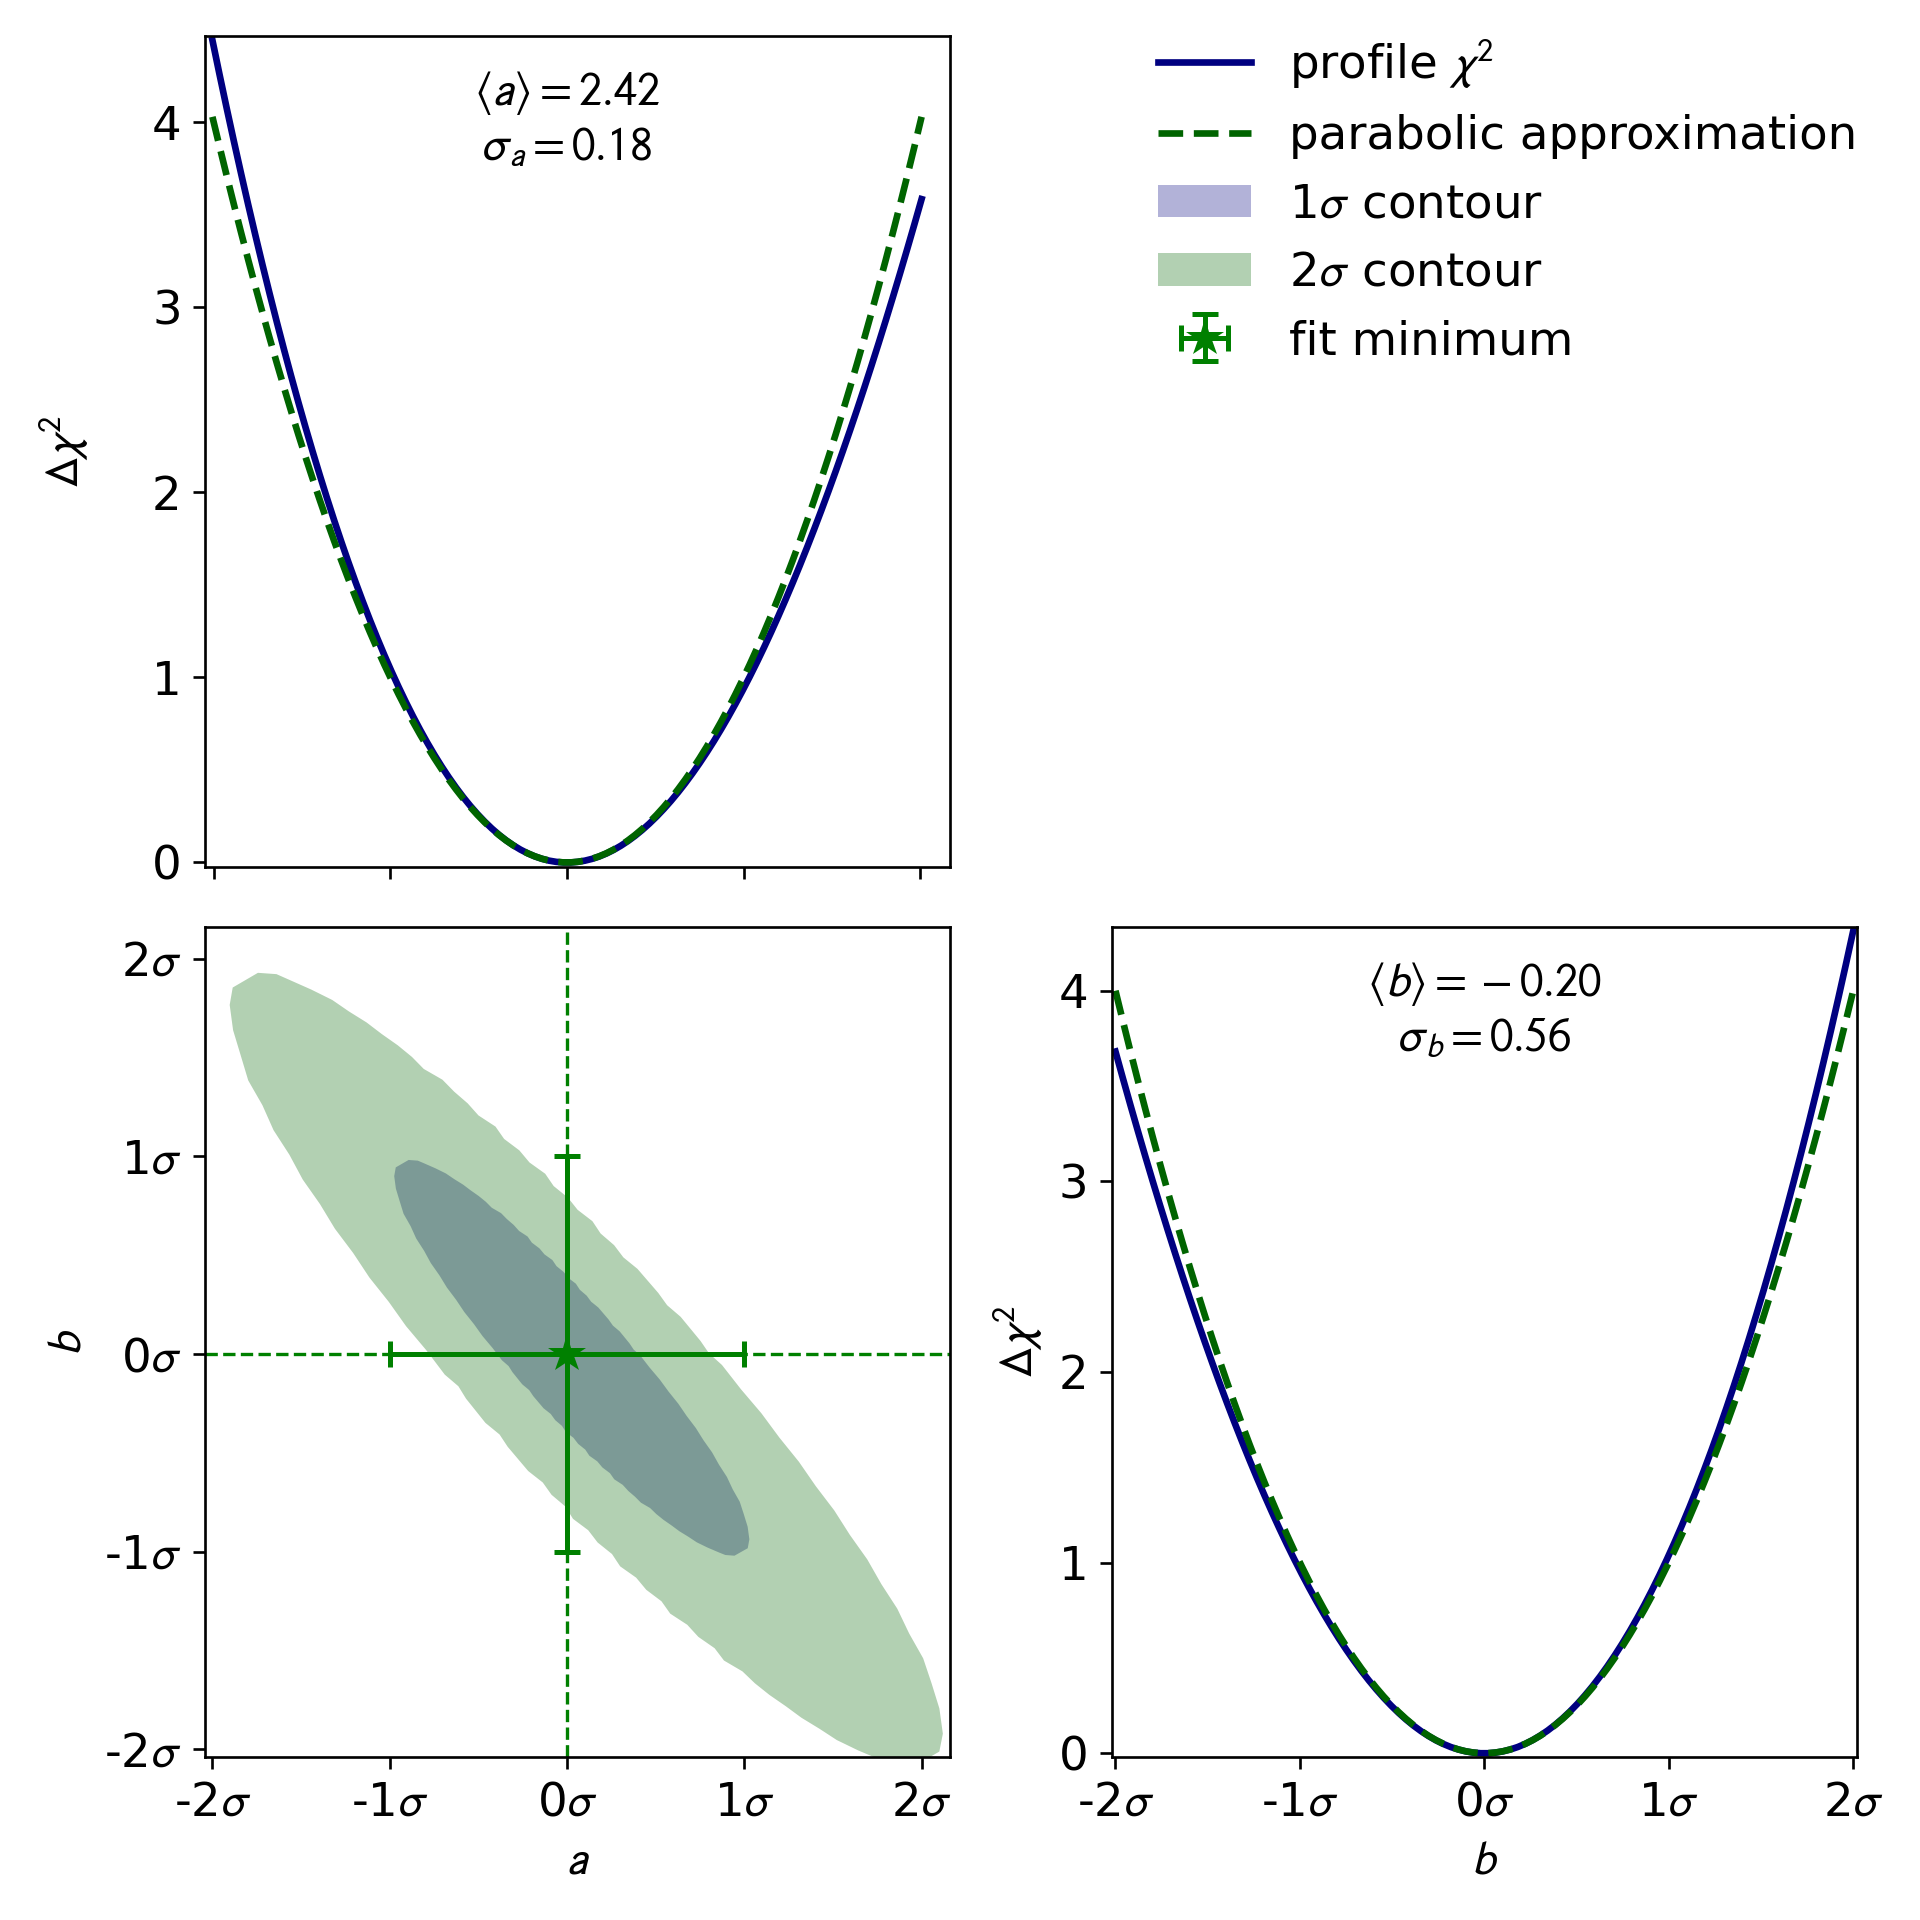 Example kafe2 plot of confidence intervals/regions